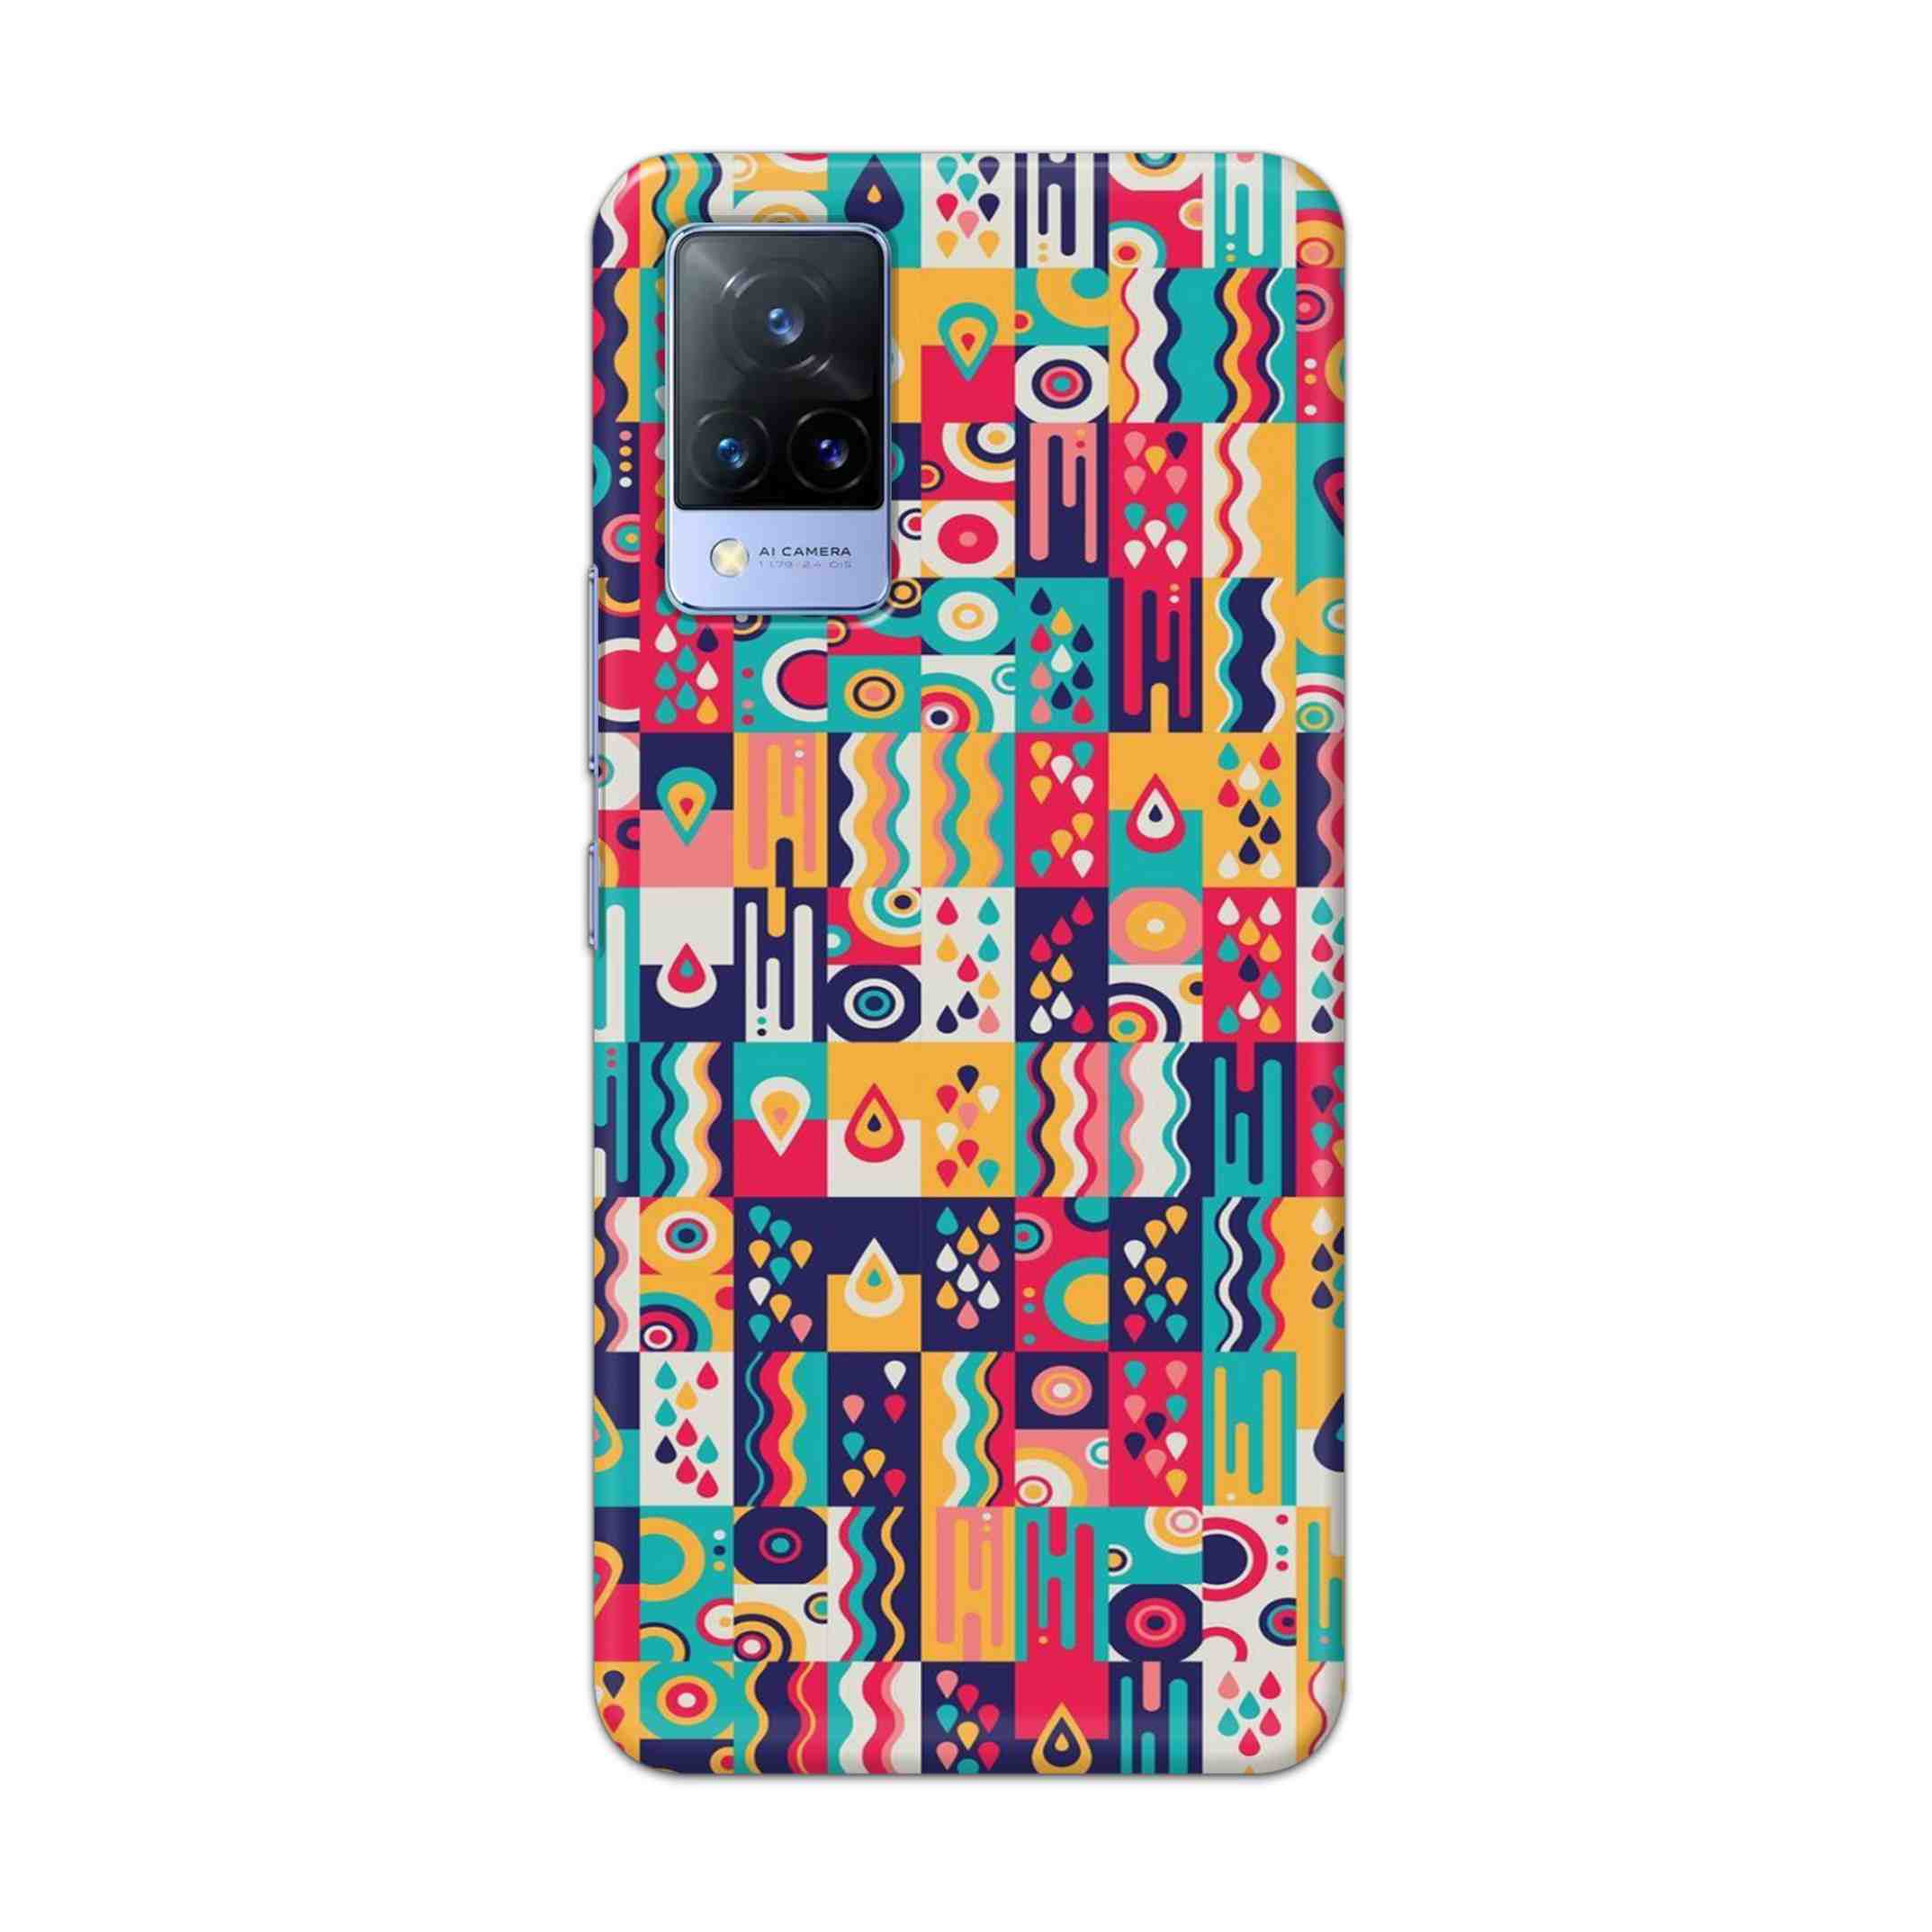 Buy Art Hard Back Mobile Phone Case Cover For Vivo V21e Online